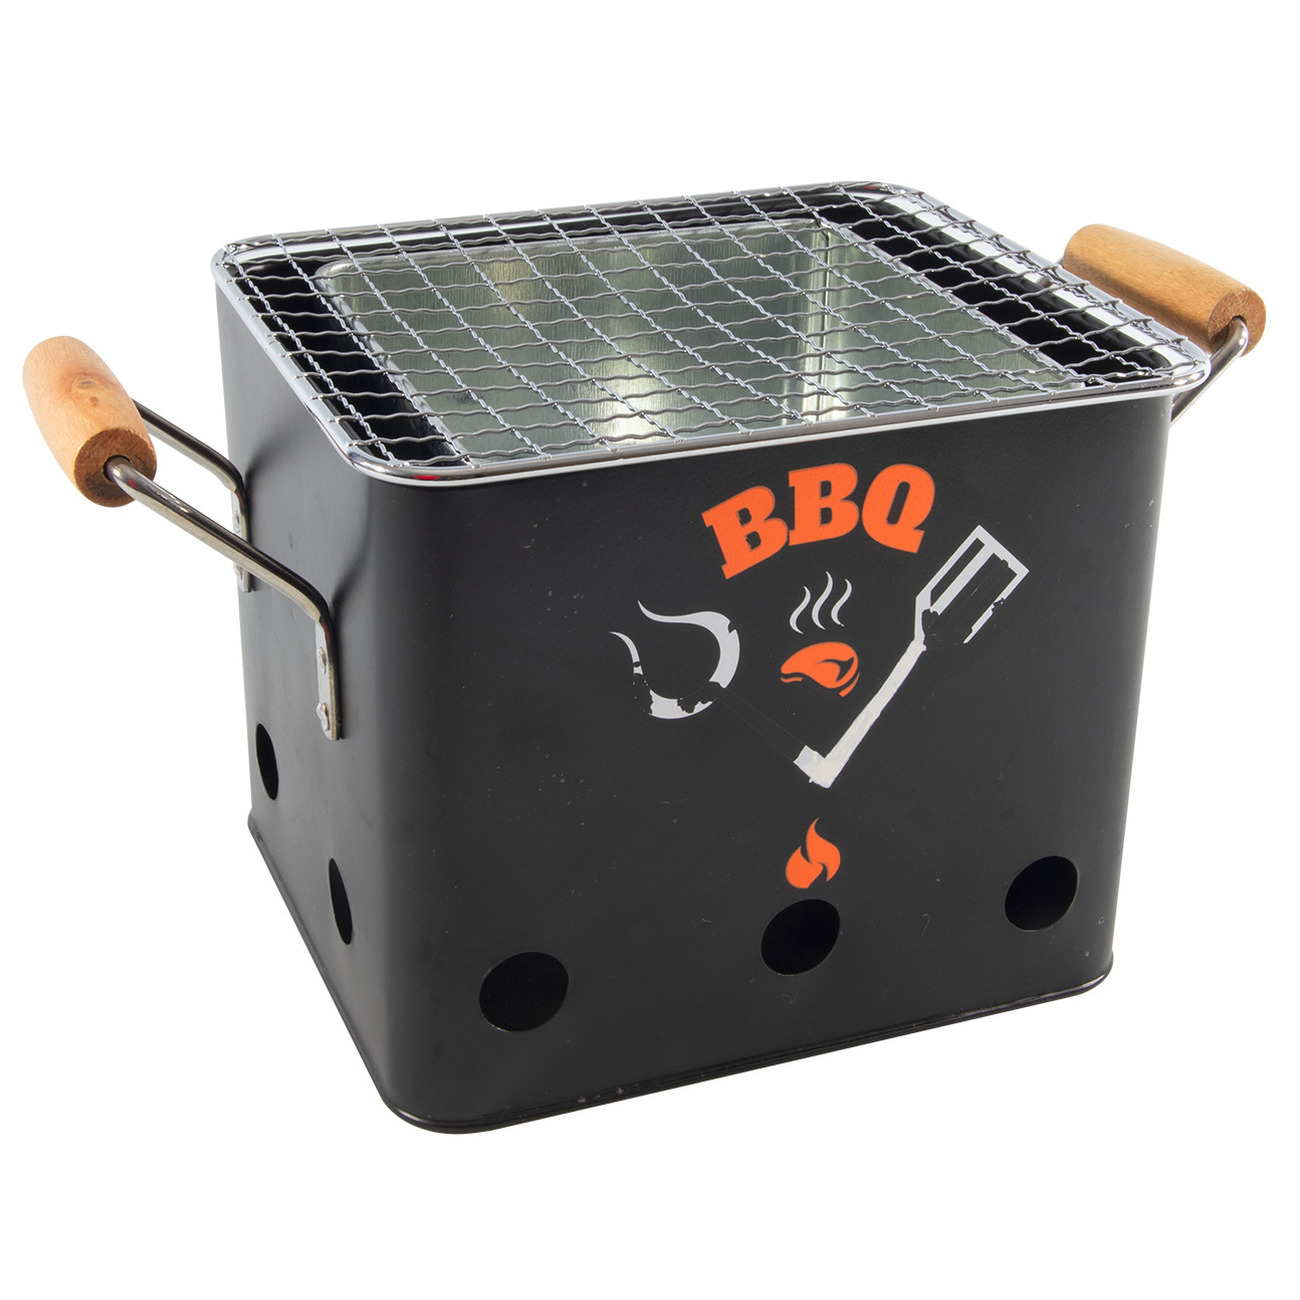 Zwarte barbecue/bbq tafelmodel 18 cm houtskool